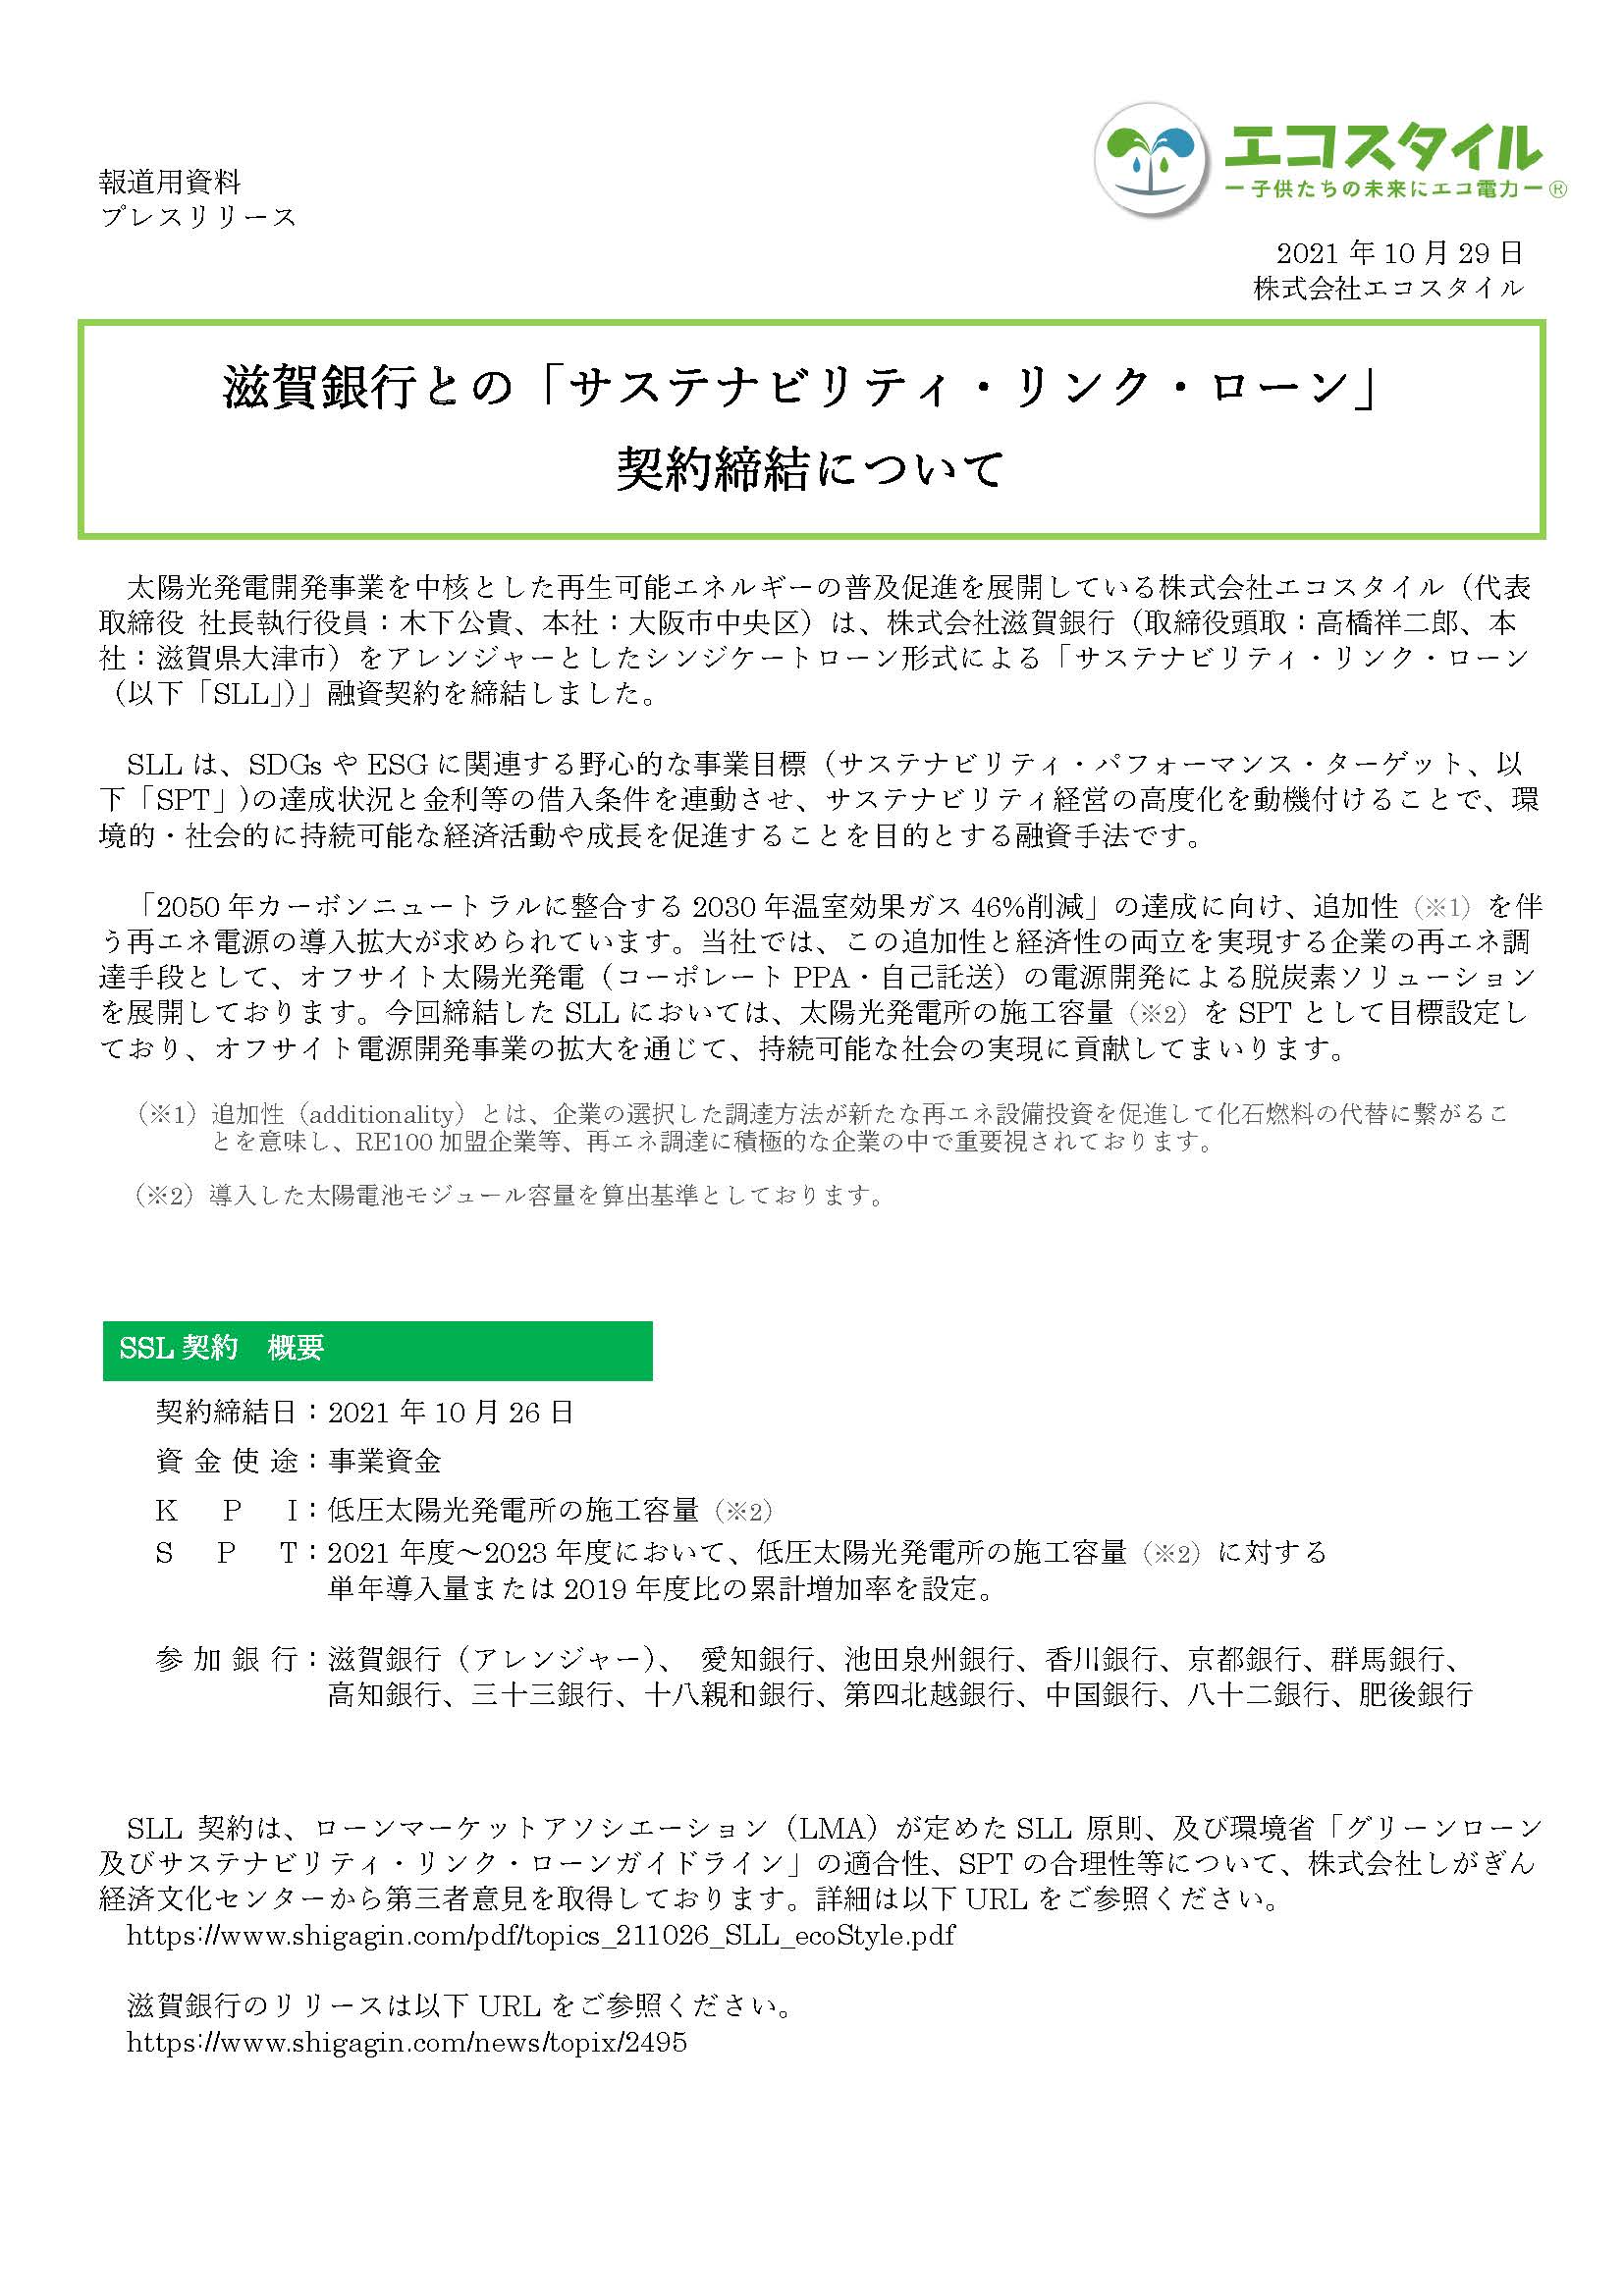 滋賀銀行との「サステナビリティ・リンク・ローン」 契約締結について